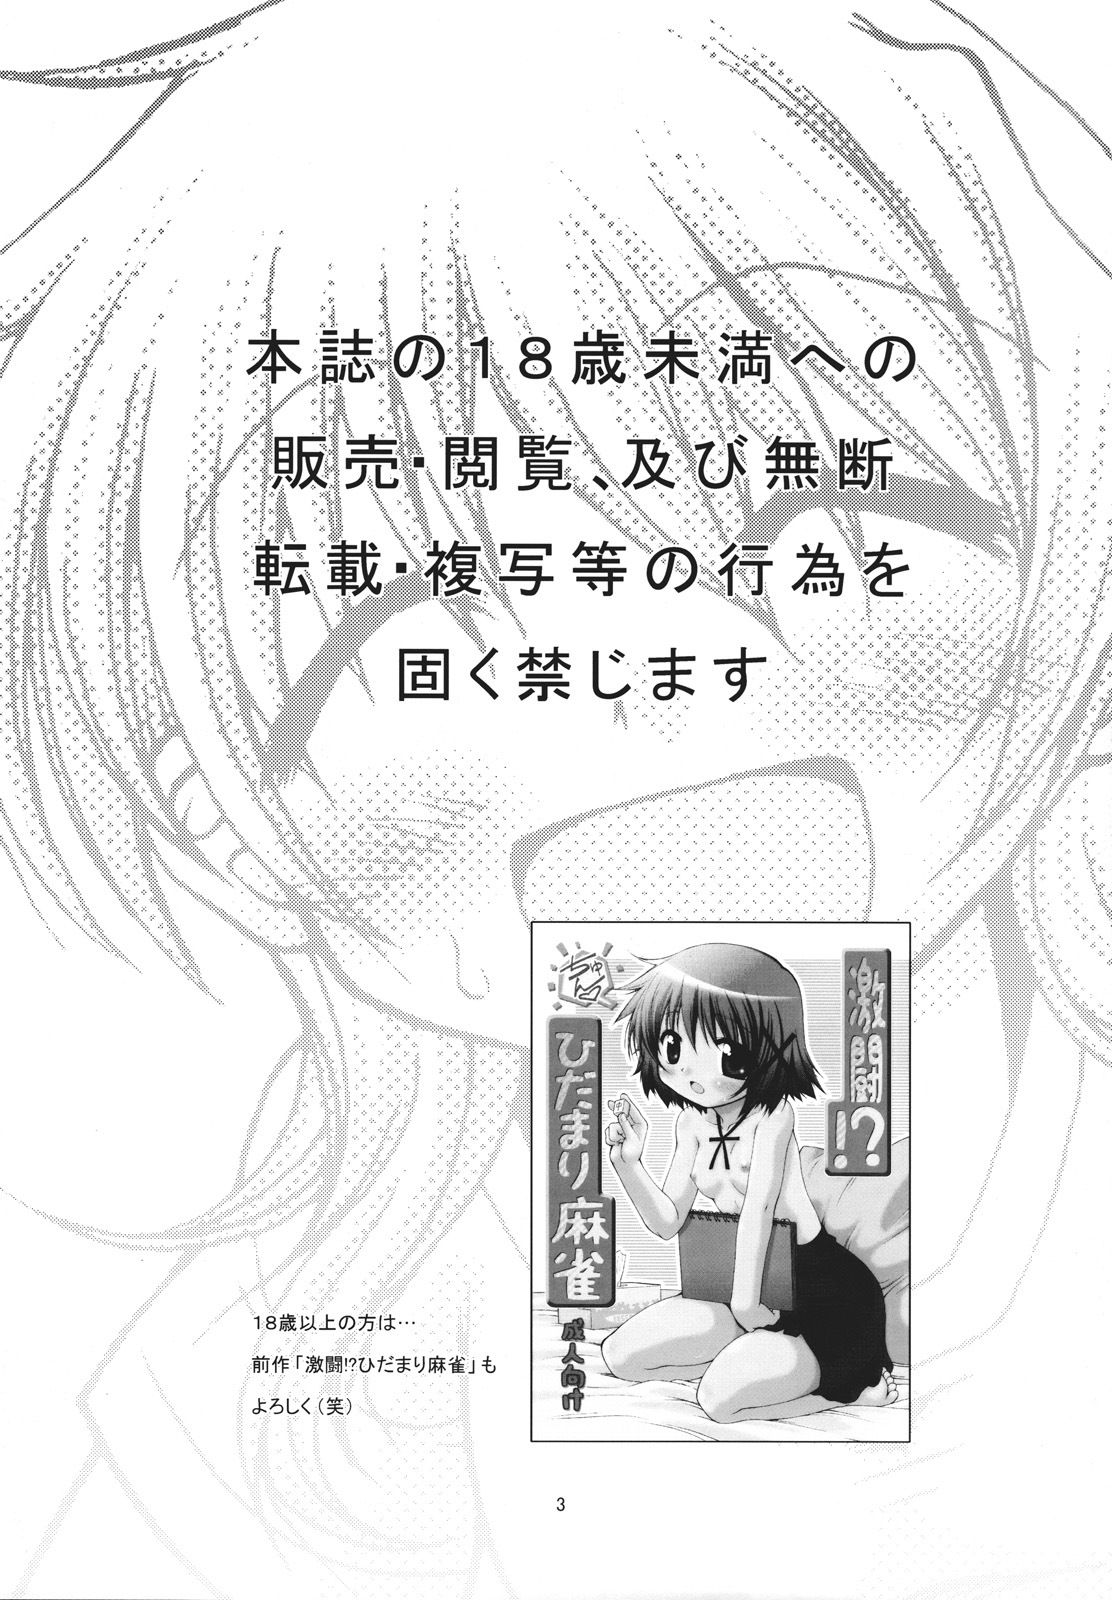 [FESTA. (Yoshitani Ganjitsu)] Taiyou Shoujo (Hidamari Sketch) [2008-03-16] page 2 full